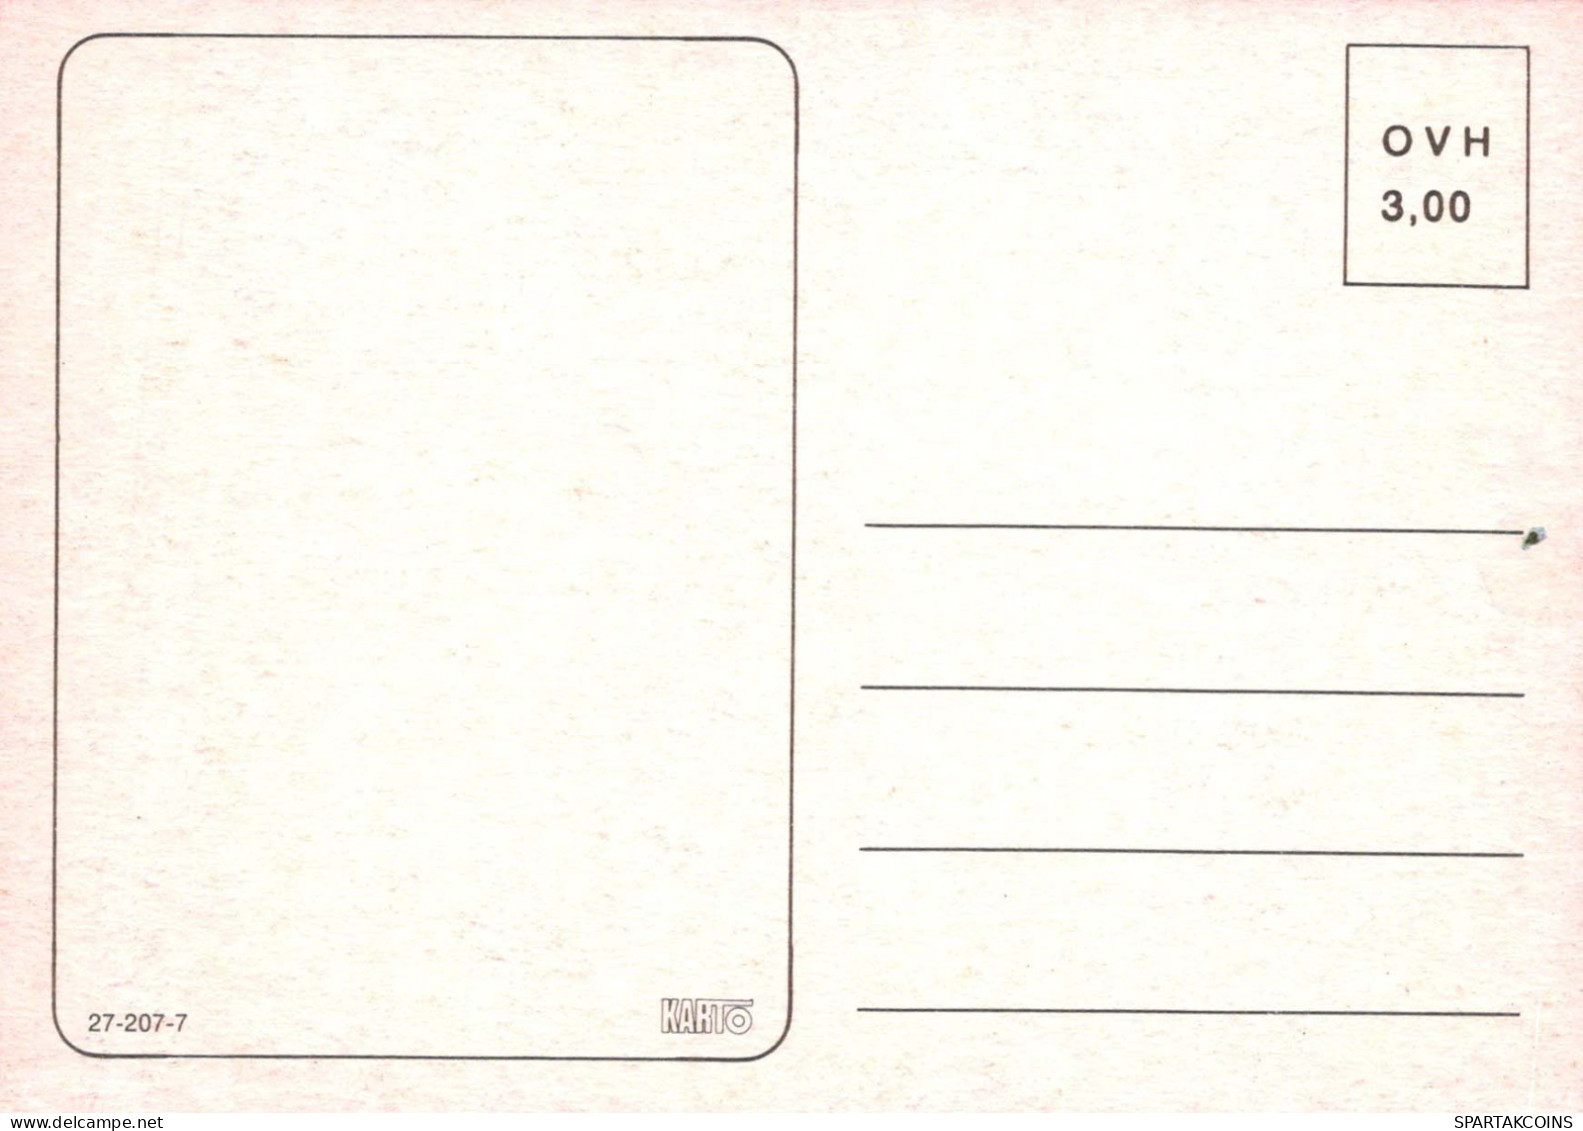 NIÑOS HUMOR Vintage Tarjeta Postal CPSM #PBV194.A - Humorous Cards